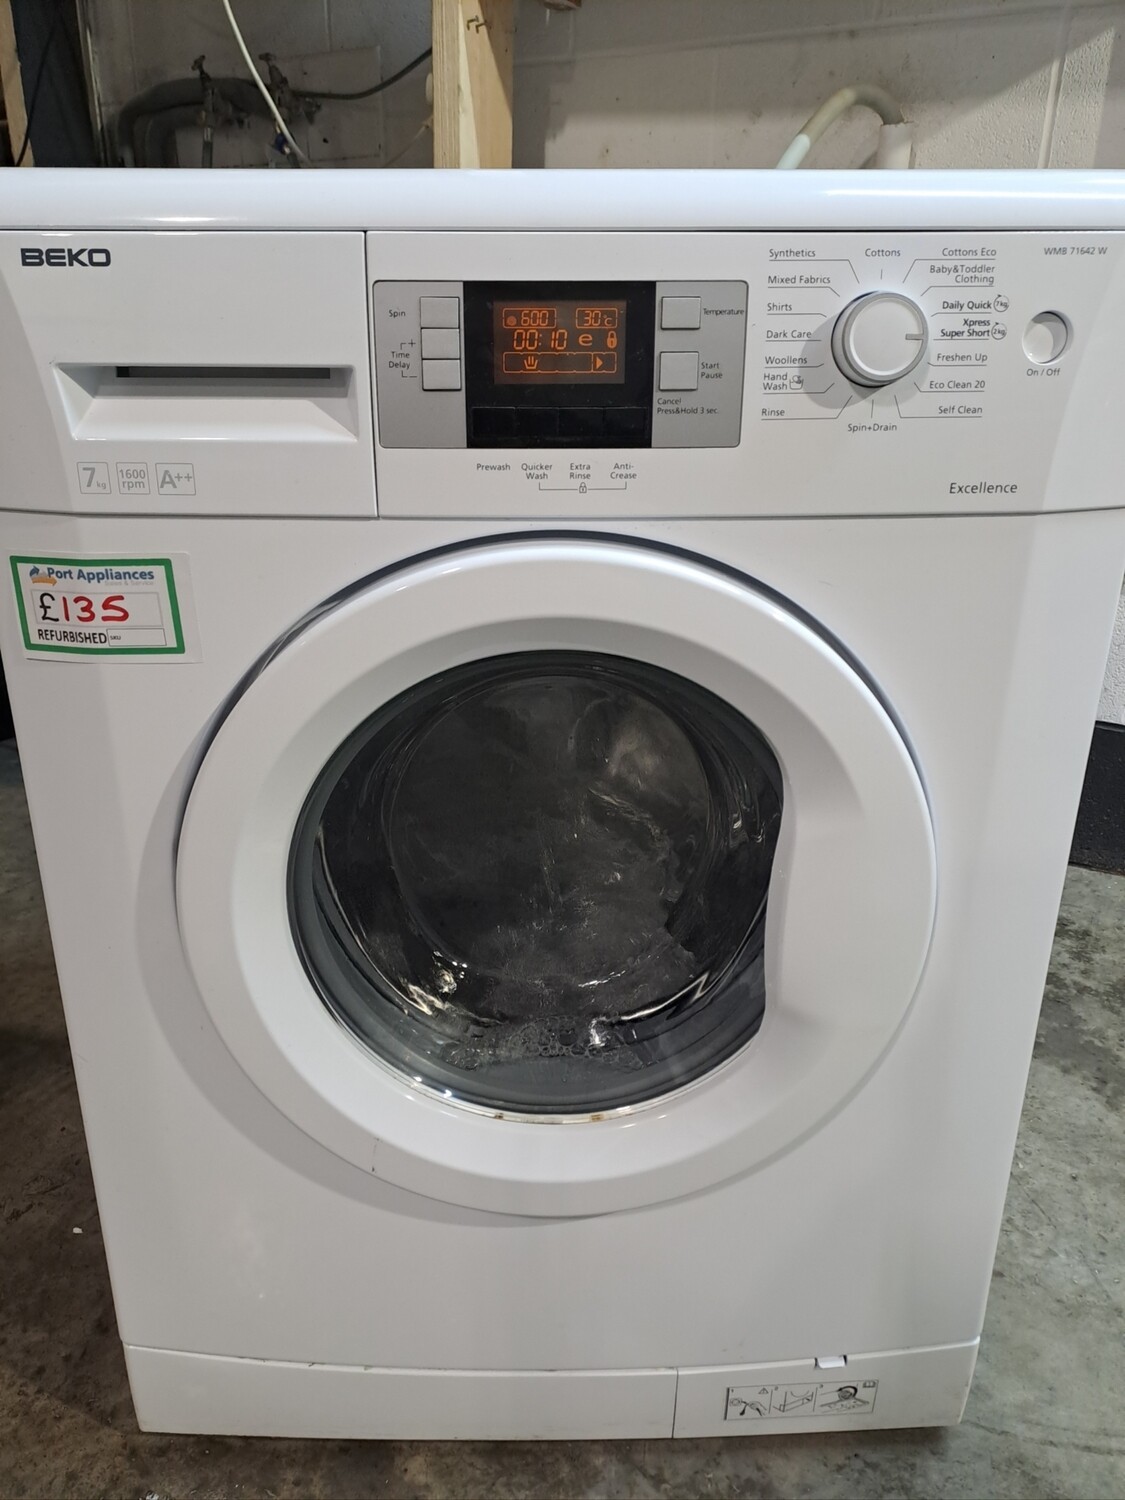 Beko WMB71642W 7kg Load 1600 Spin Washing Machine - White - Refurbished - 6 Month Guarantee